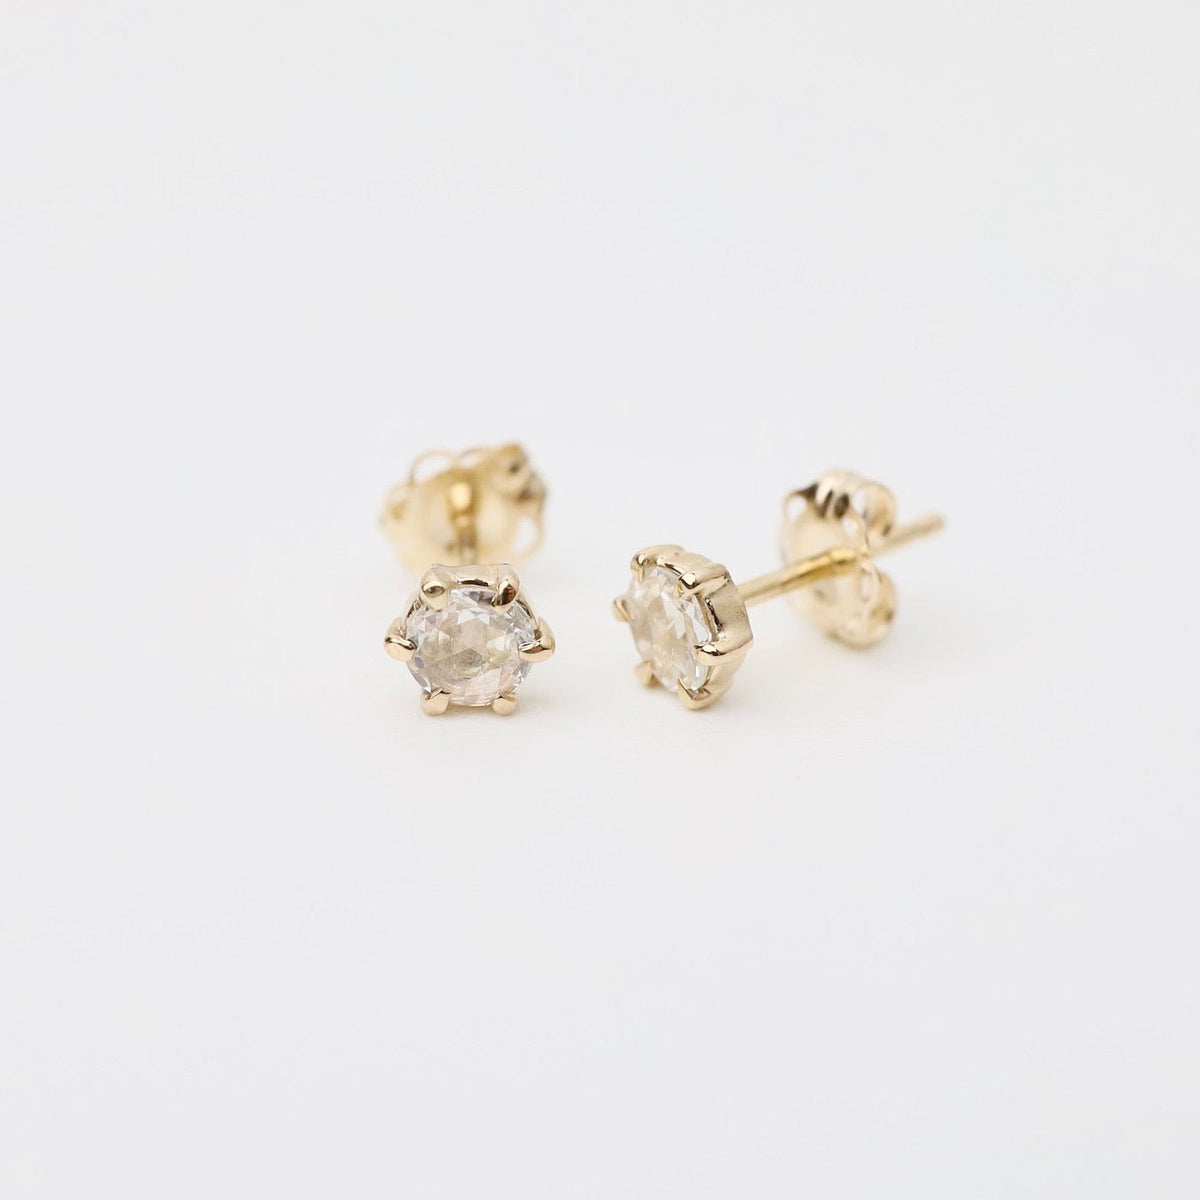 Skara Brae Studs – Dandelion Jewelry